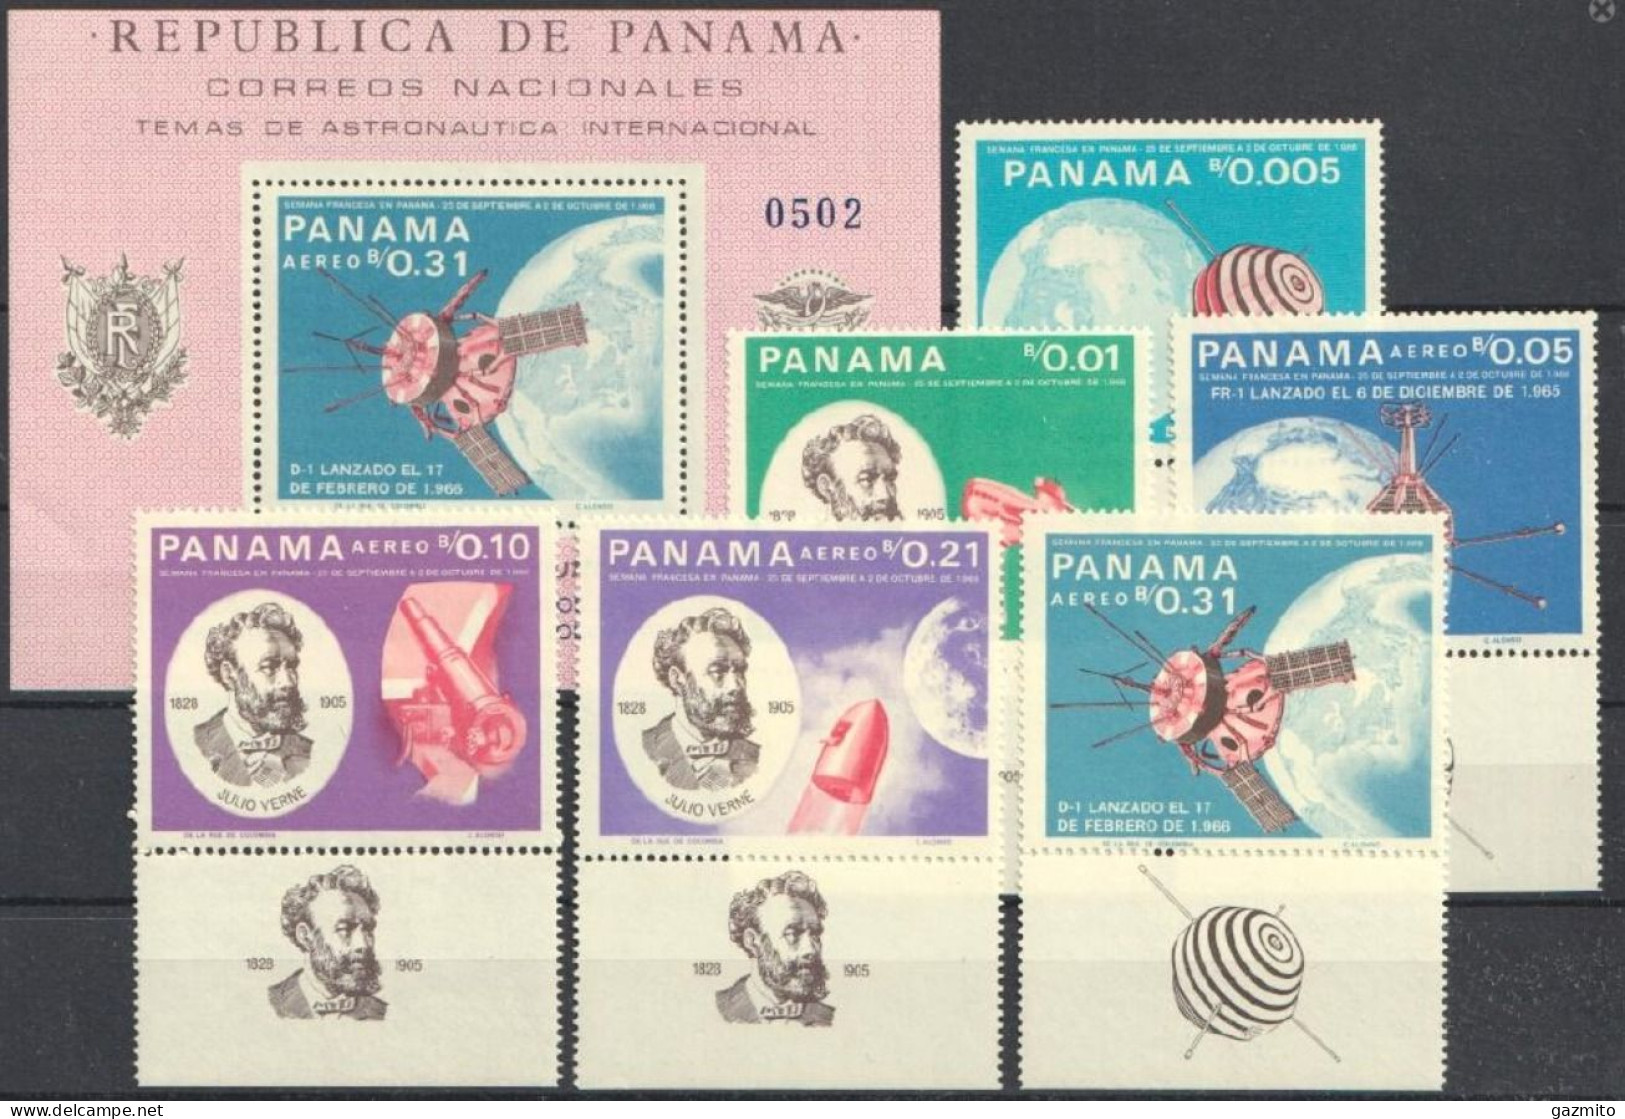 Panama 1966, Verne, Space, Submarine, 6val +BF - Escritores